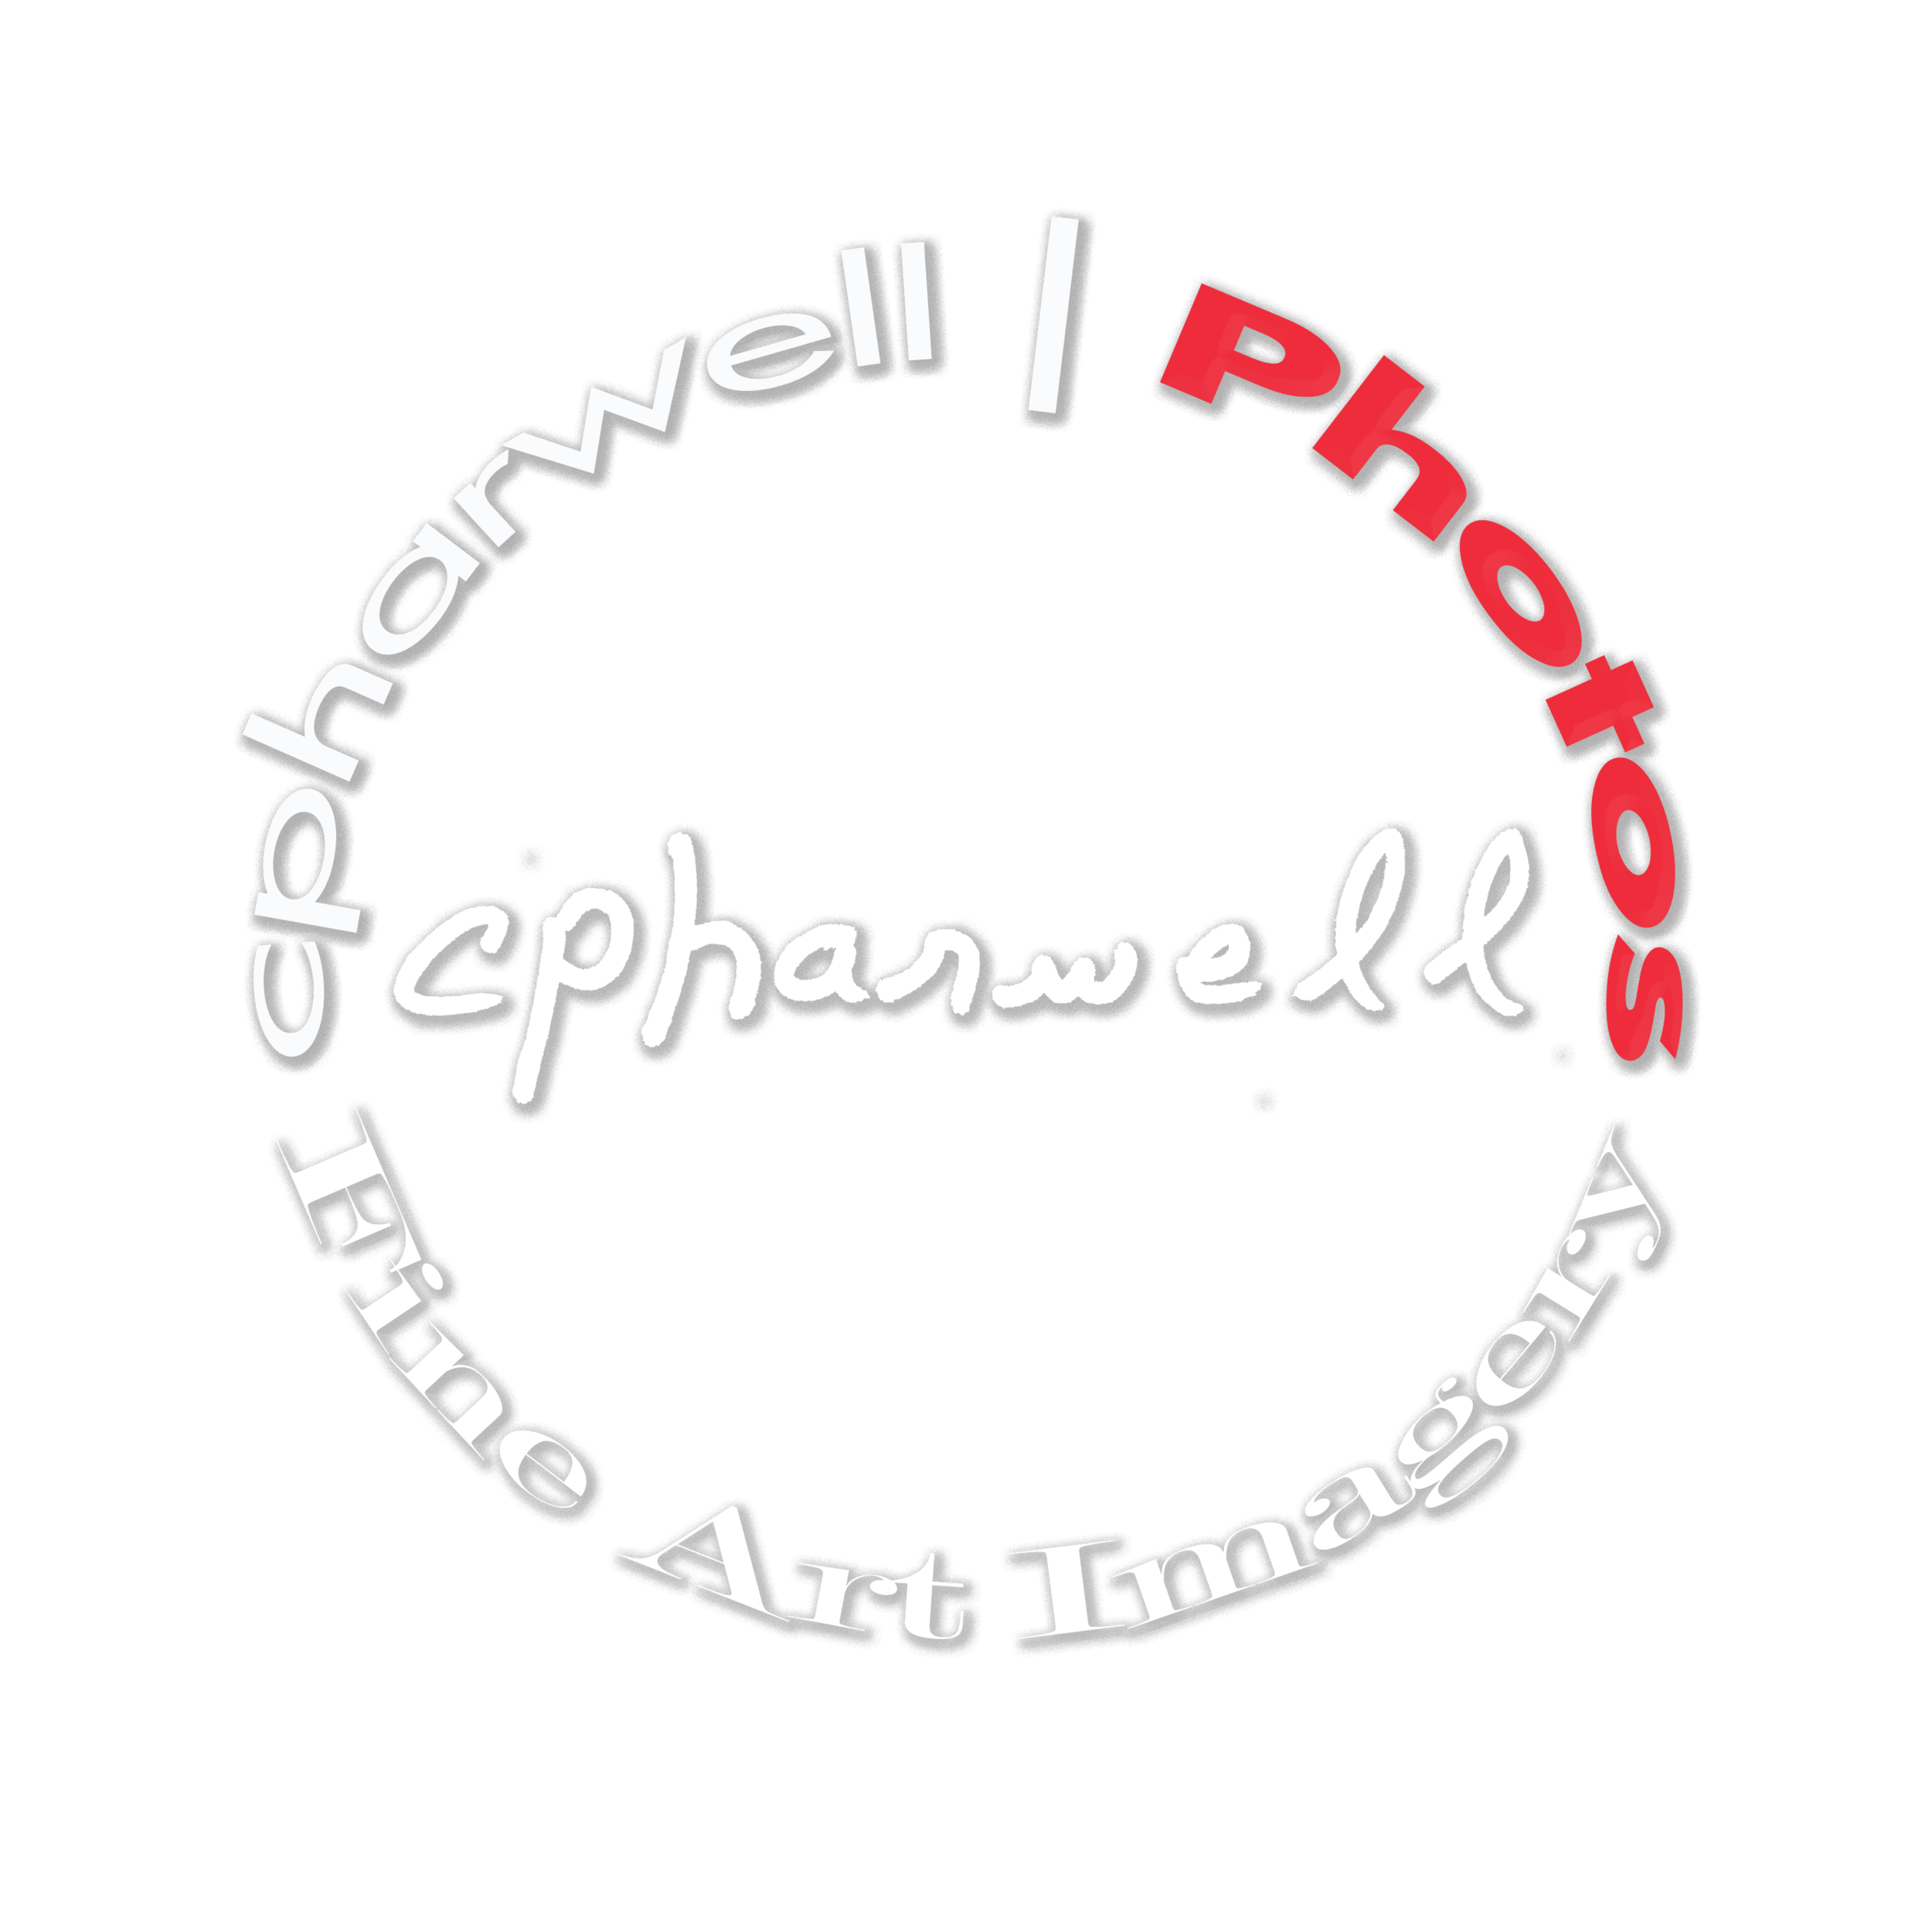 cpharwell | Photos